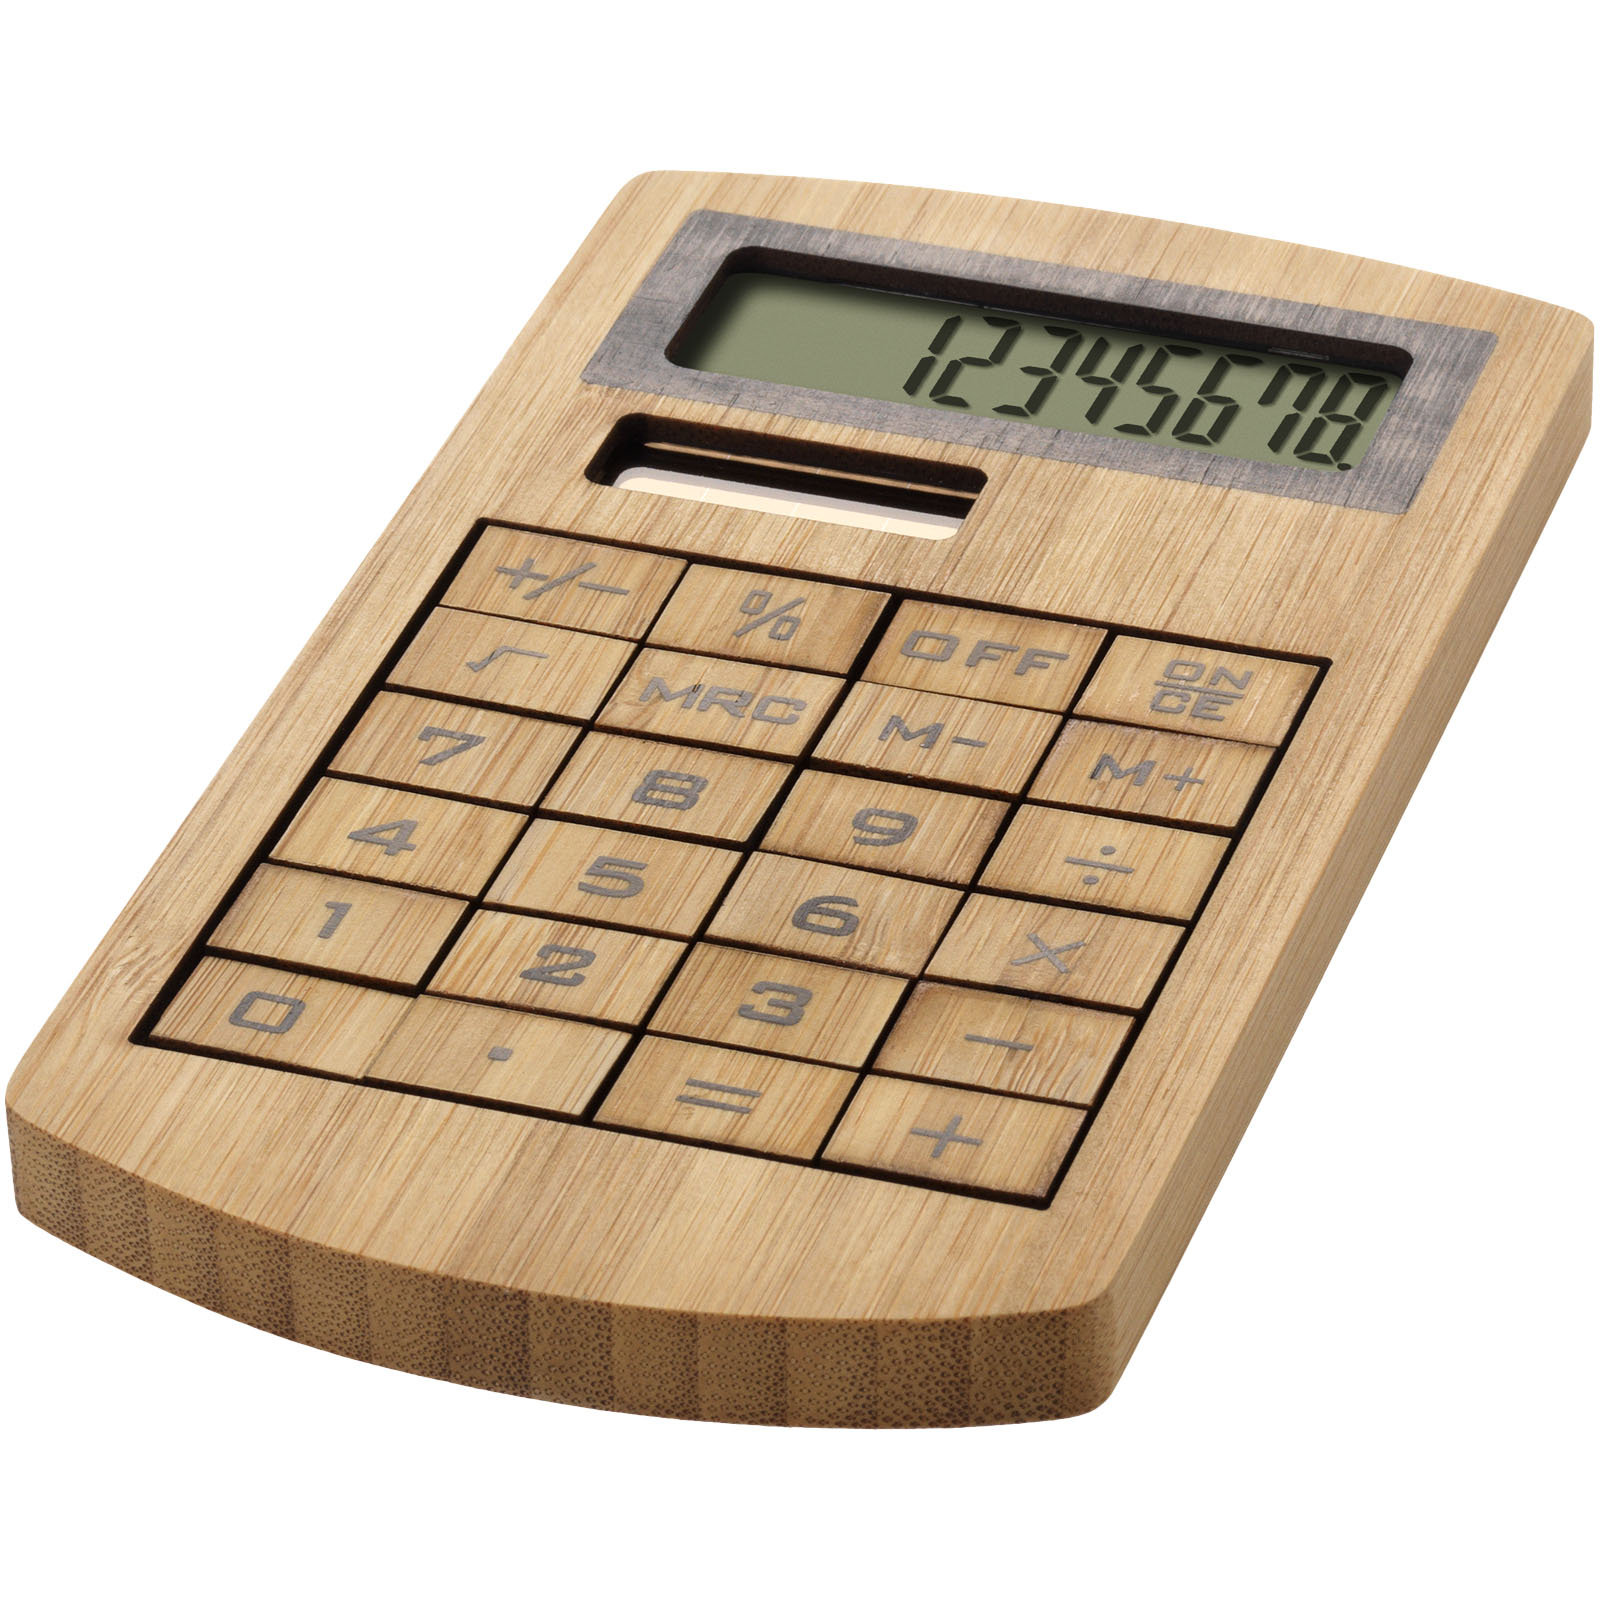 Calculatrice personnalisée en Bambou - Isabella - Zaprinta Belgique